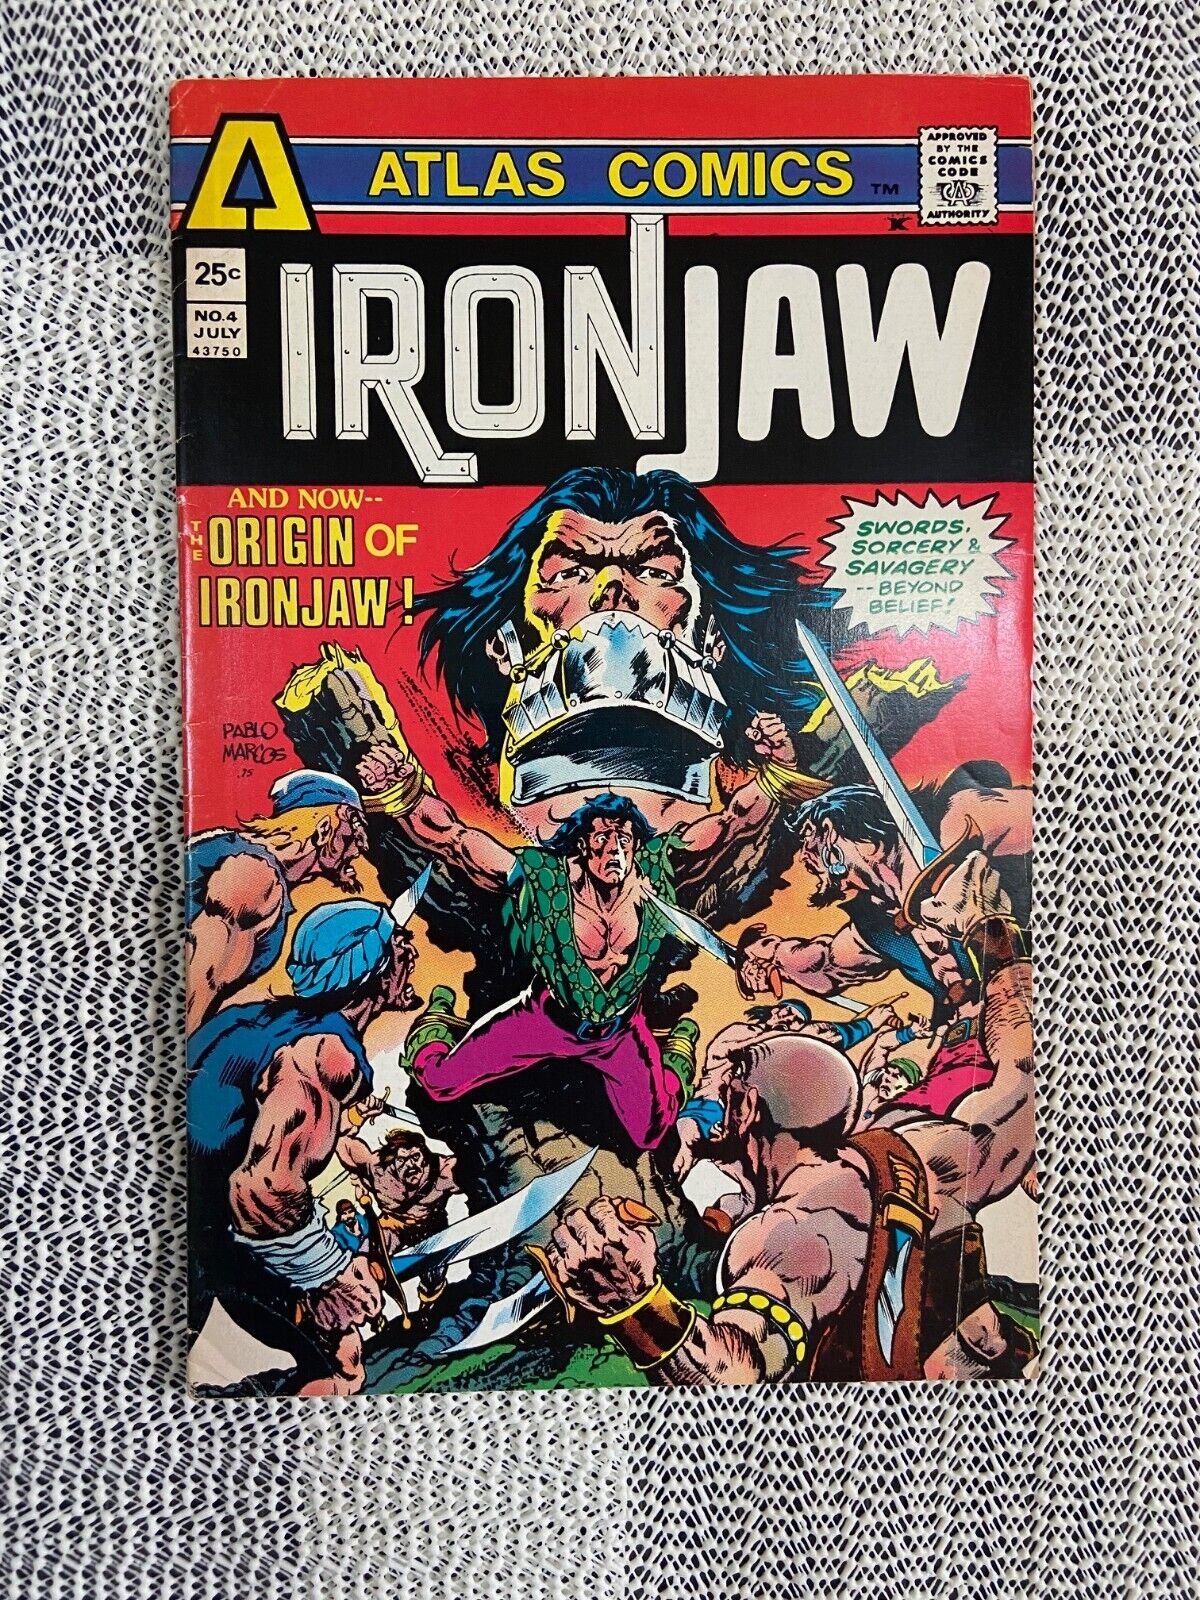 Ironjaw #4  Comic Book  Origin of Ironjaw